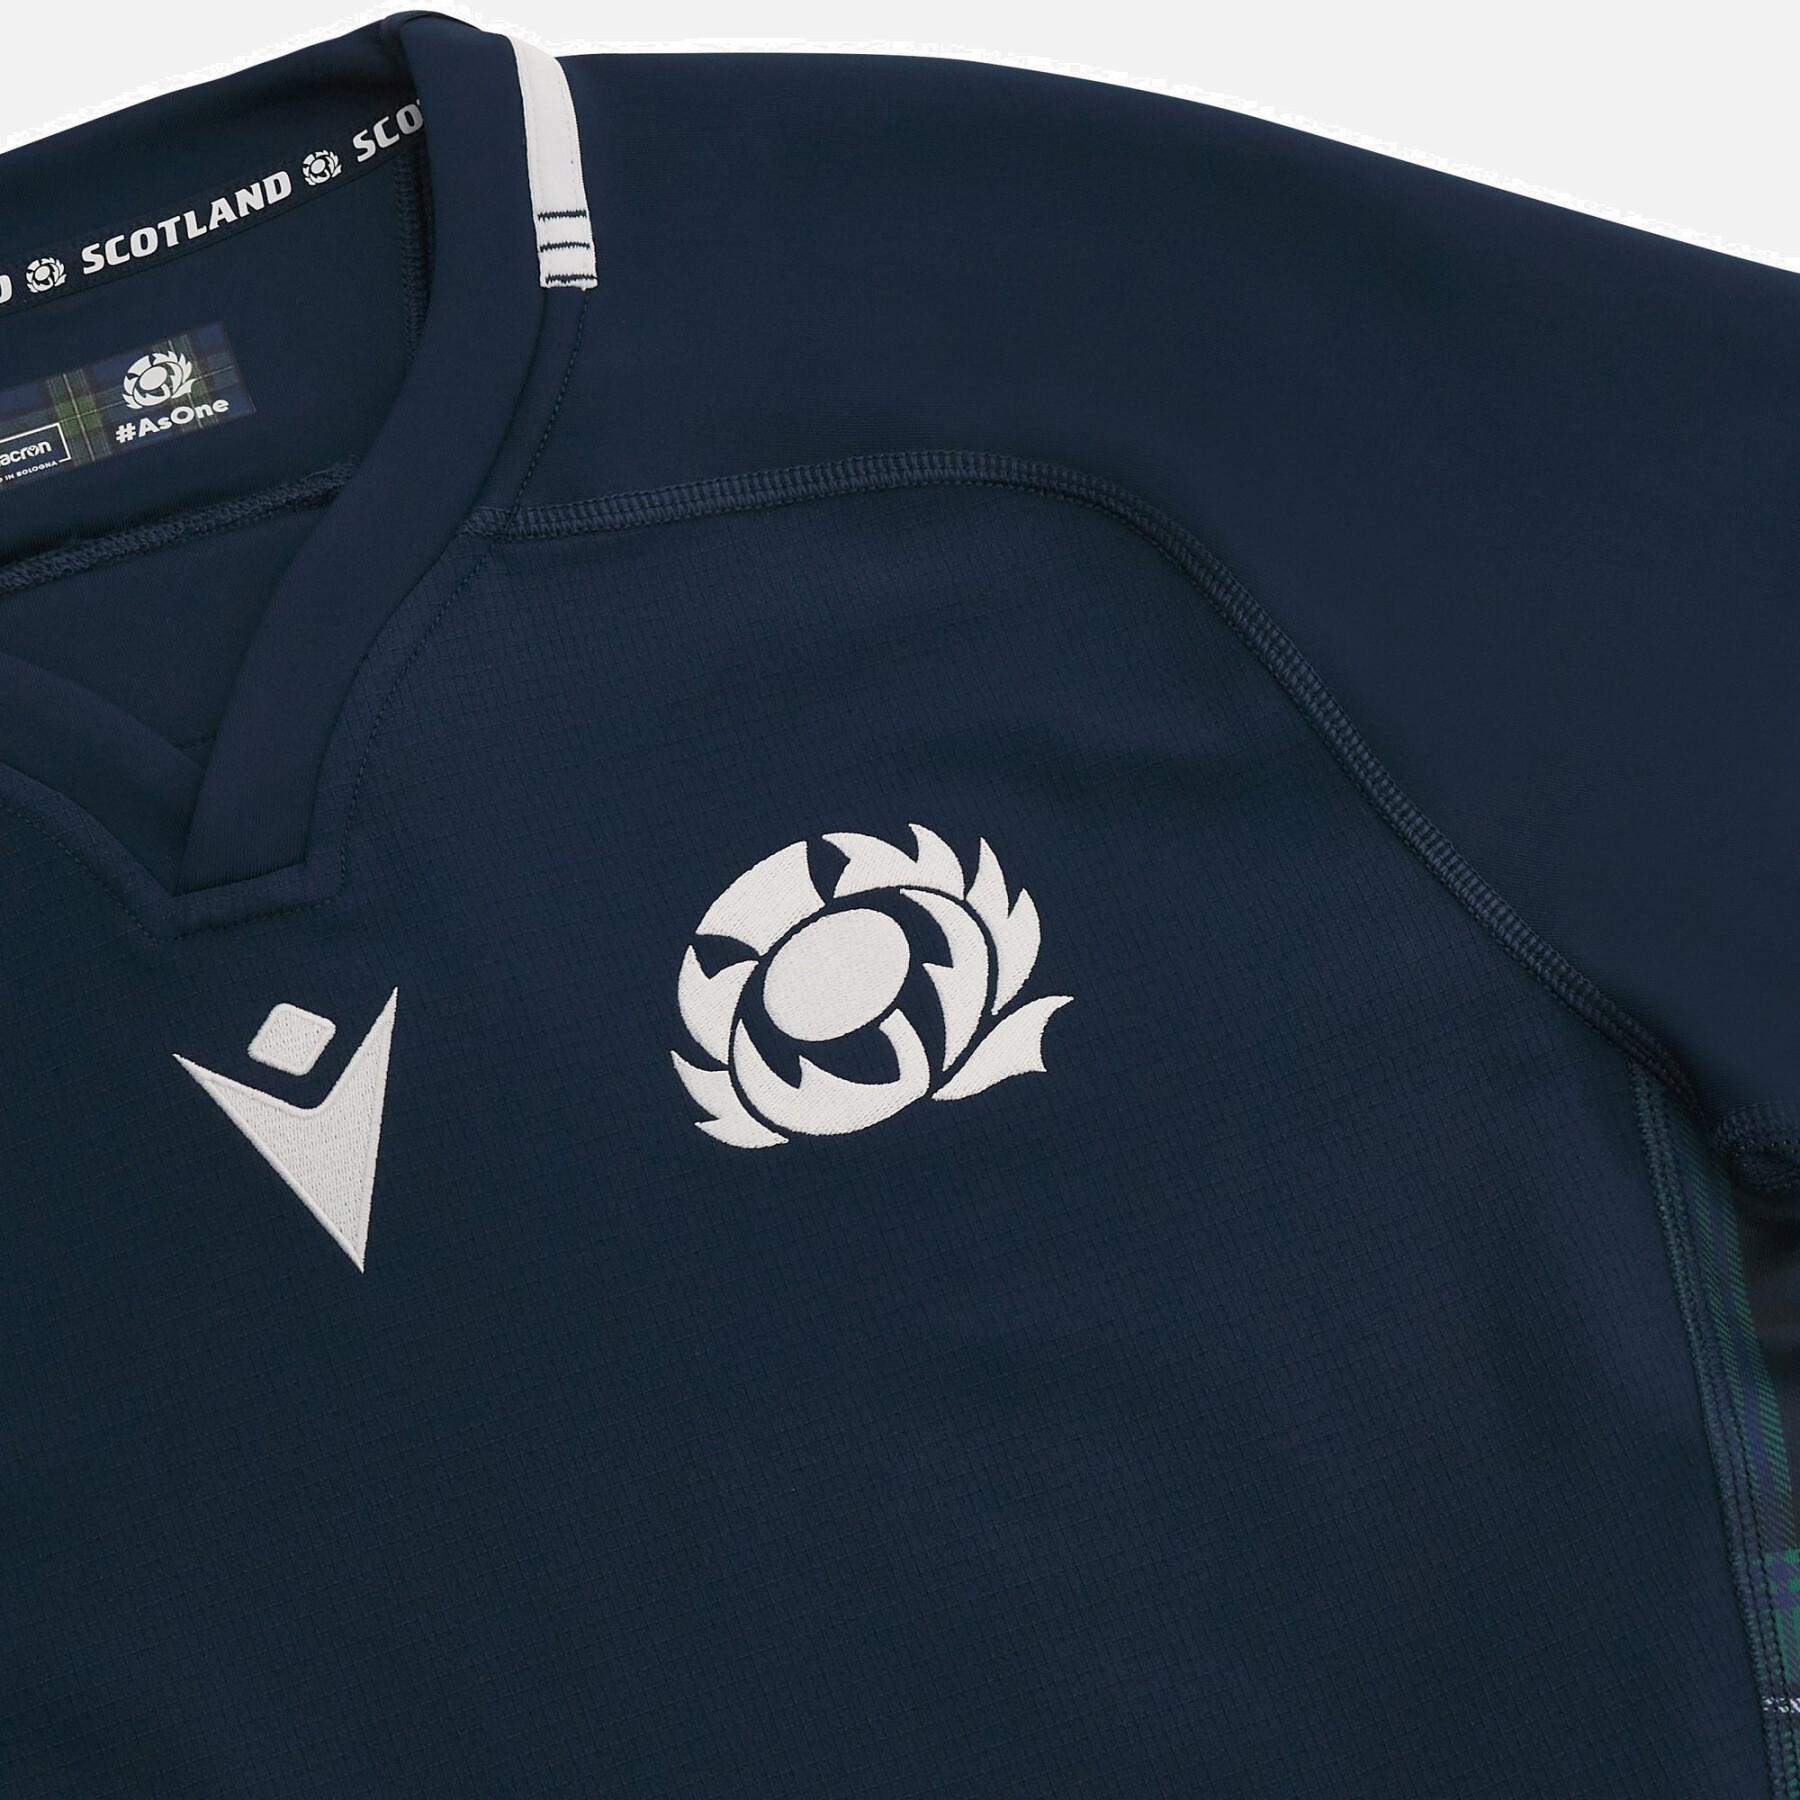 Edición especial de la camiseta primerra equipaciónauténtica de la Copa Mundial de Rugby 2023 Écosse